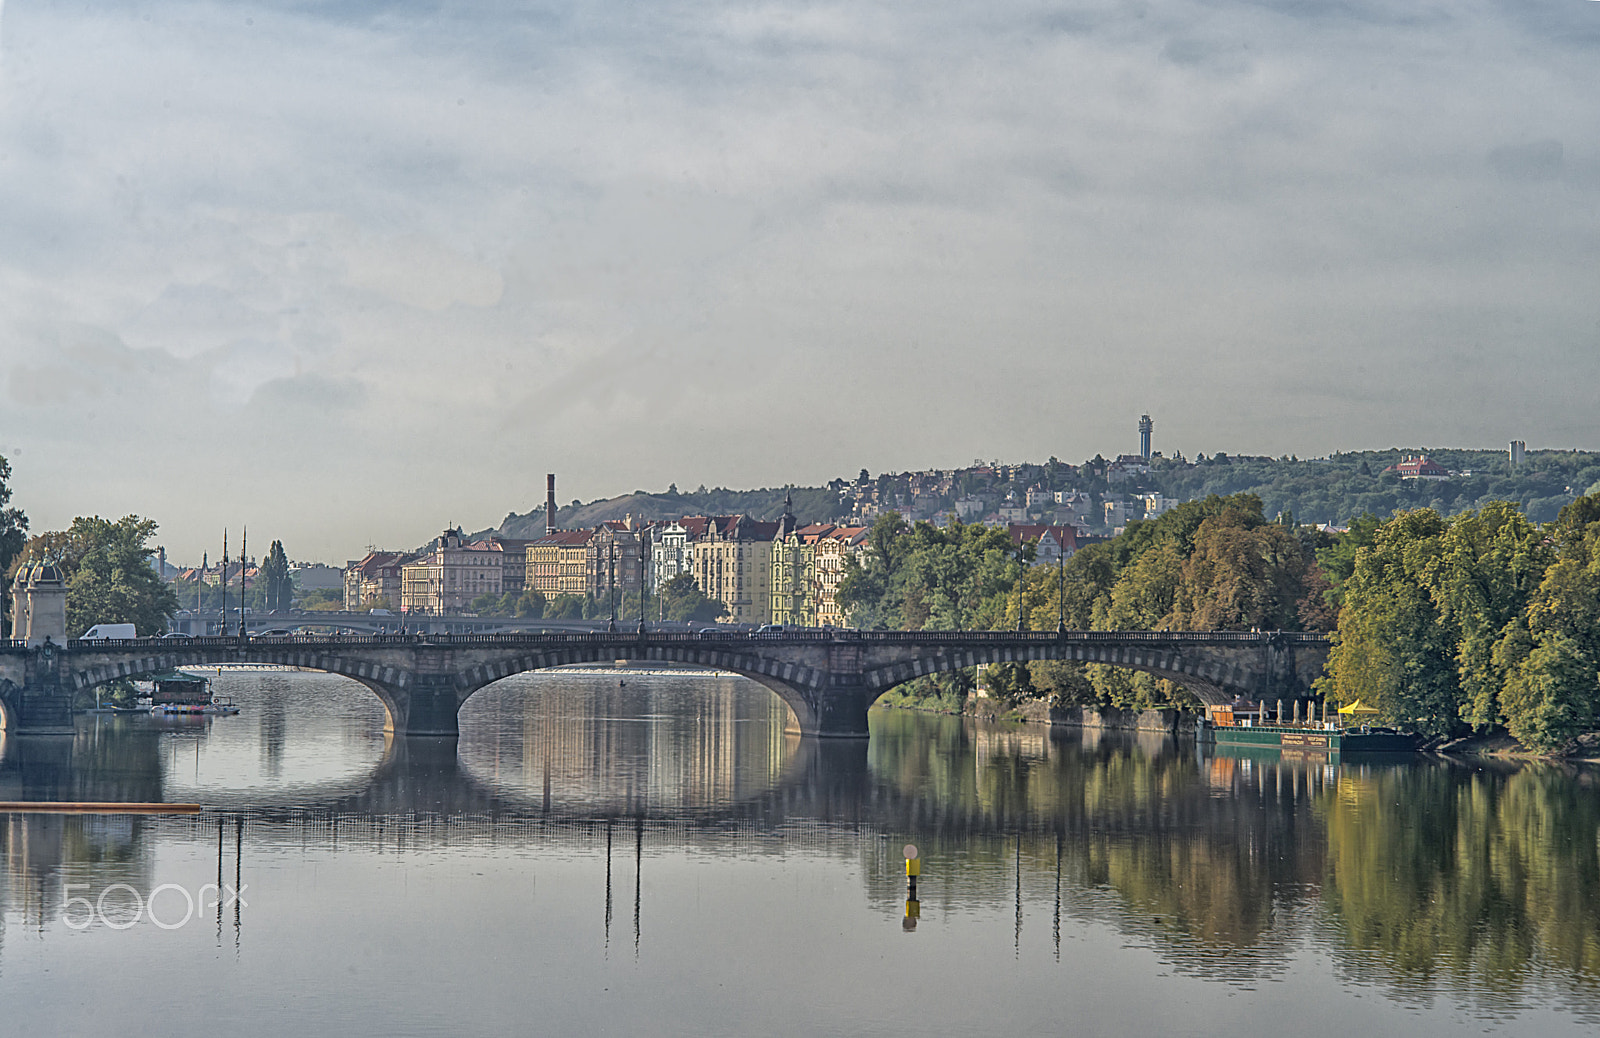 AF Zoom-Nikkor 35-105mm f/3.5-4.5D sample photo. Svatopluk bridge over the vltava river, prague photography